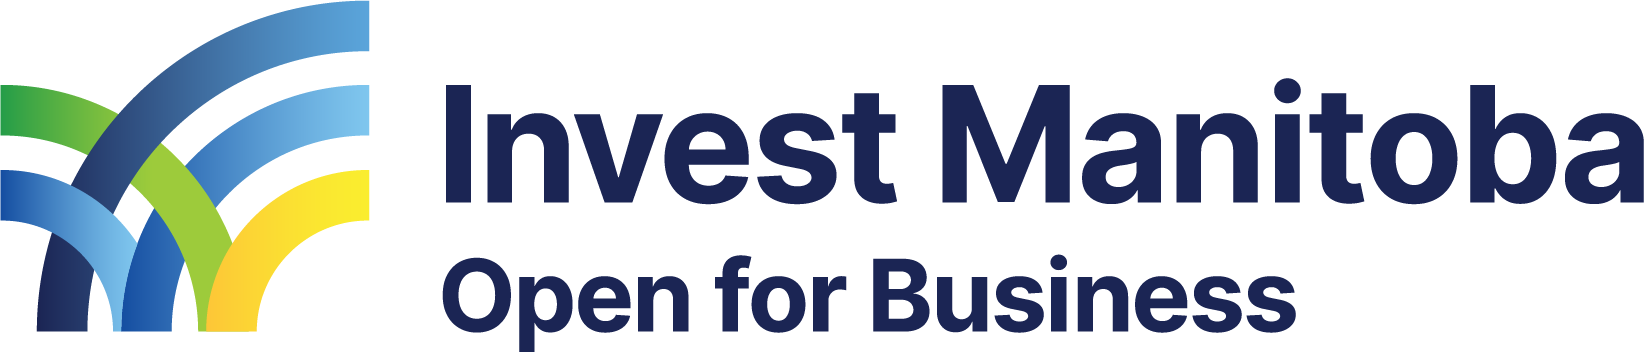 Invest Manitoba logo